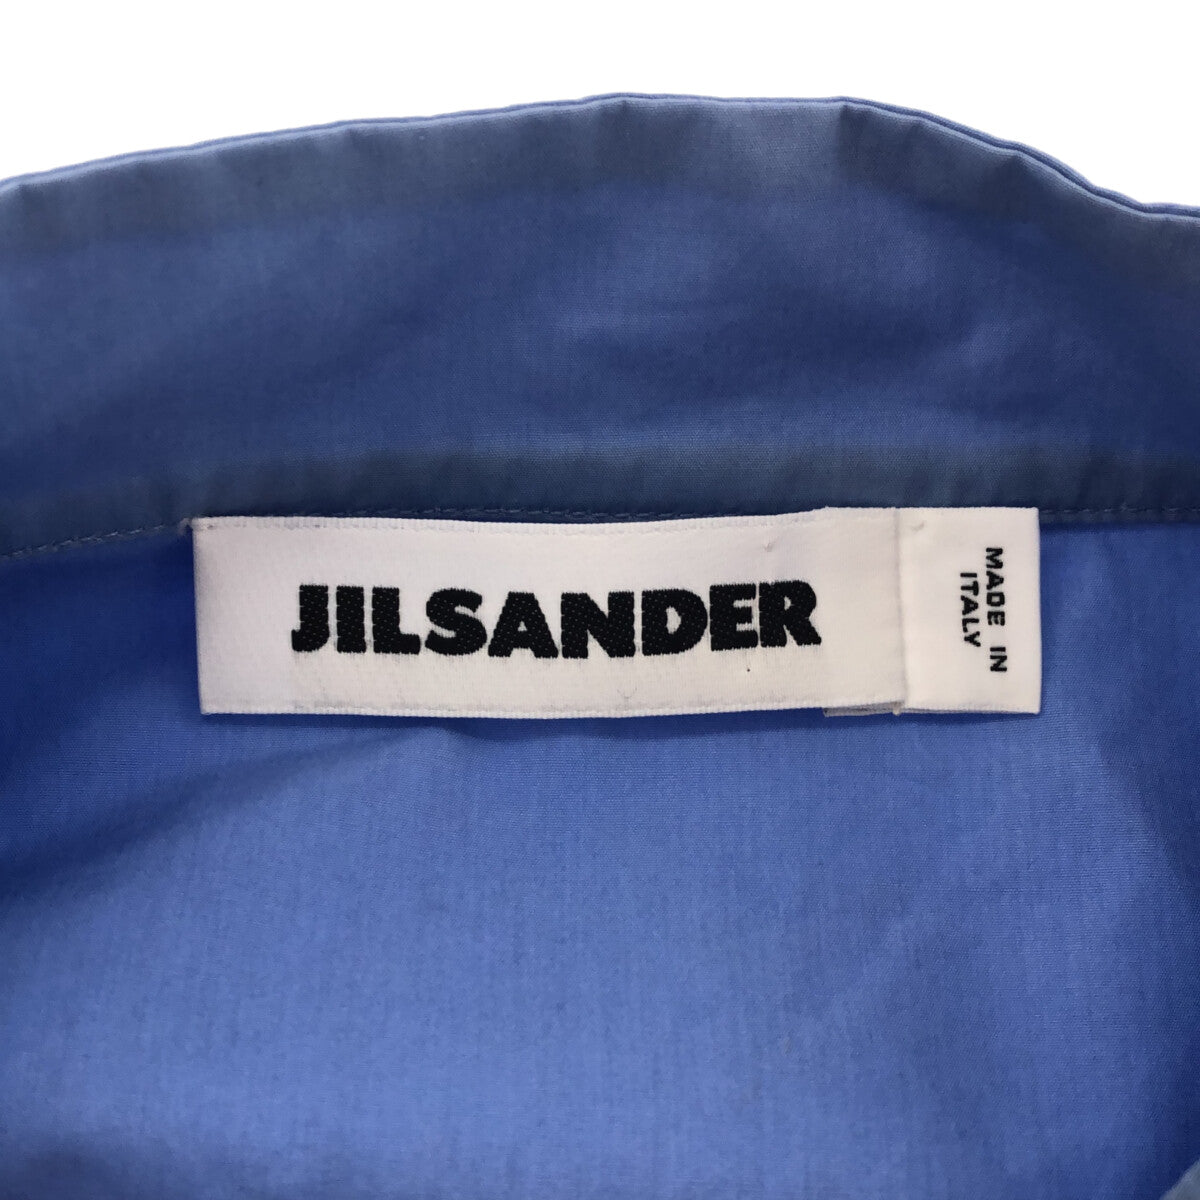 JIL SANDER / ジルサンダー | コットン ギャザー スタンドカラー フライフロント ビッグシルエット シャツワンピース | 32 |